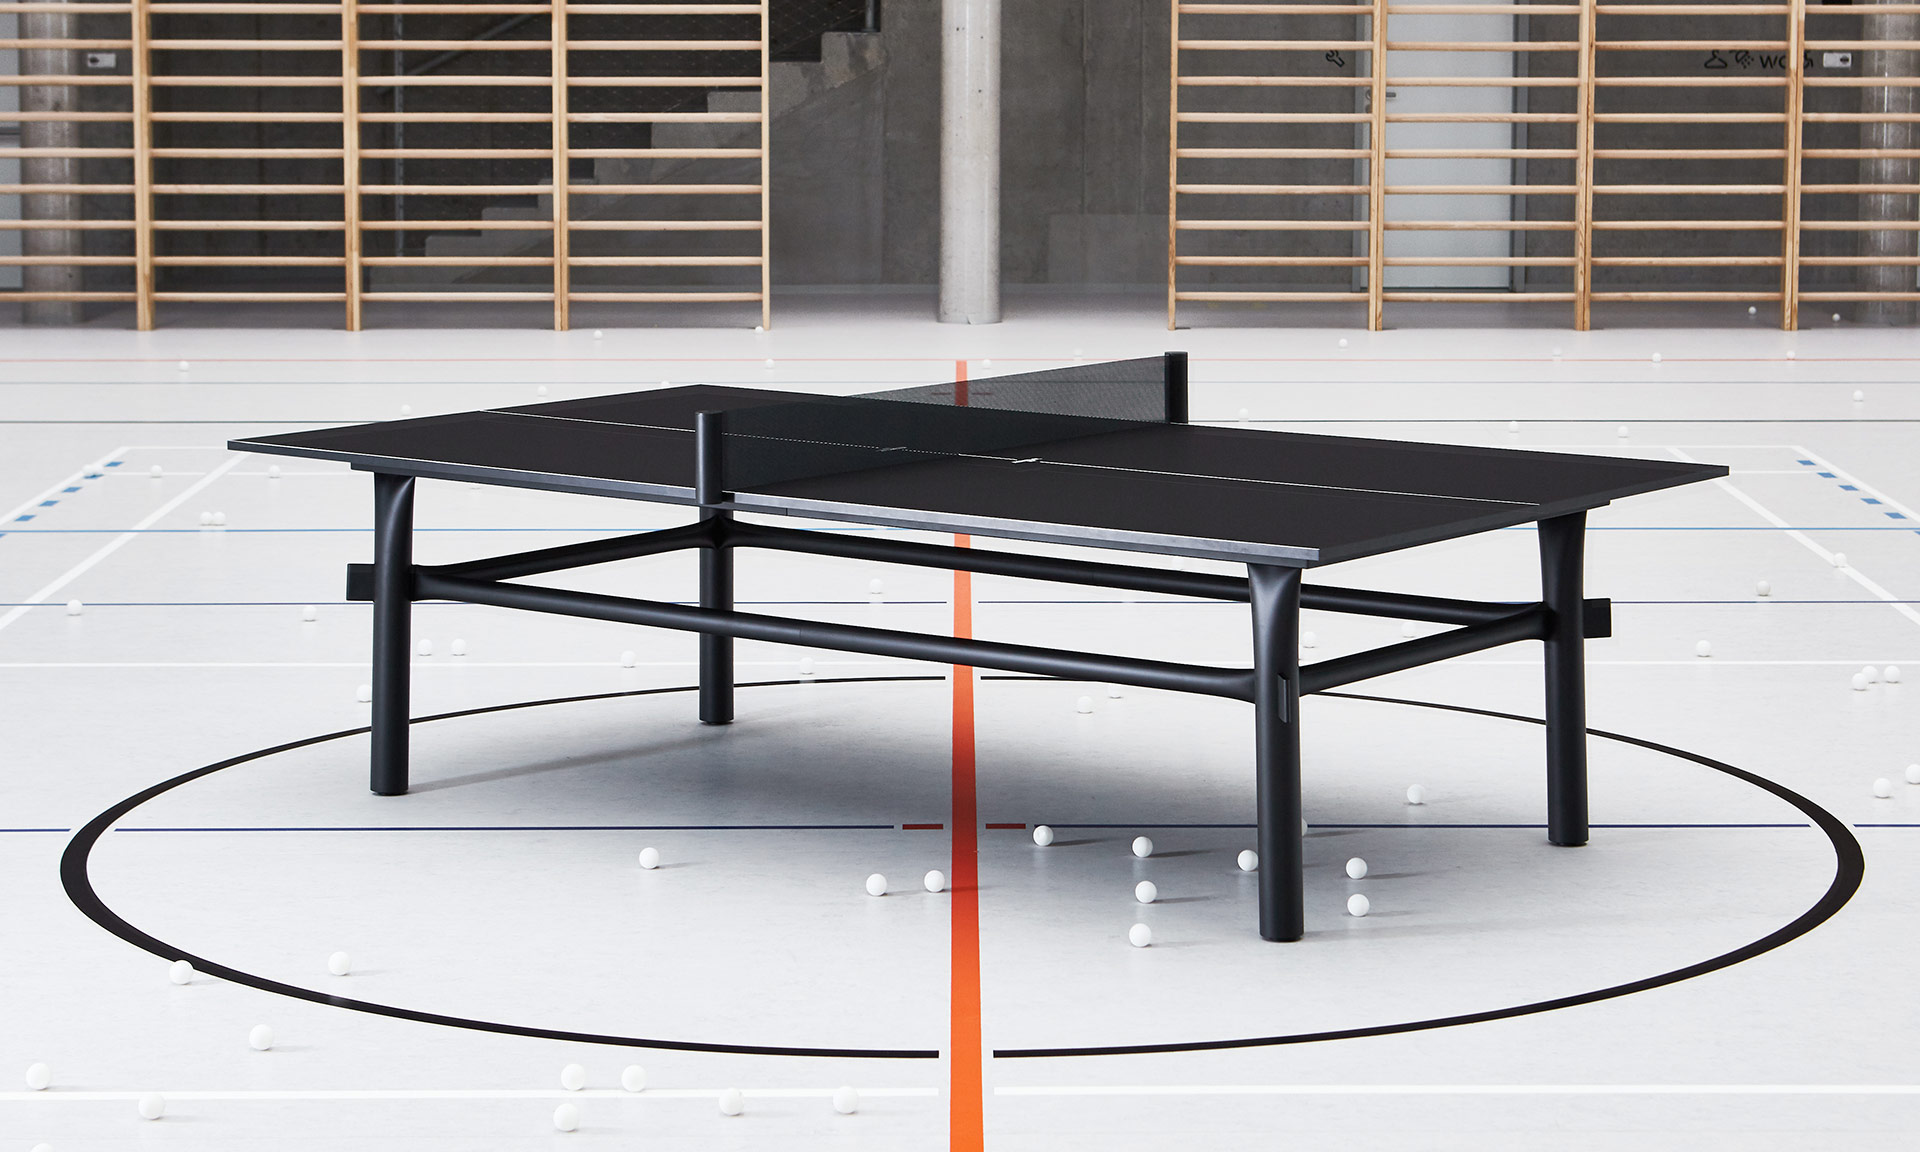 Dvojice českých designérů ze studia Vono navrhla moderní stolní tenis Marshmallow